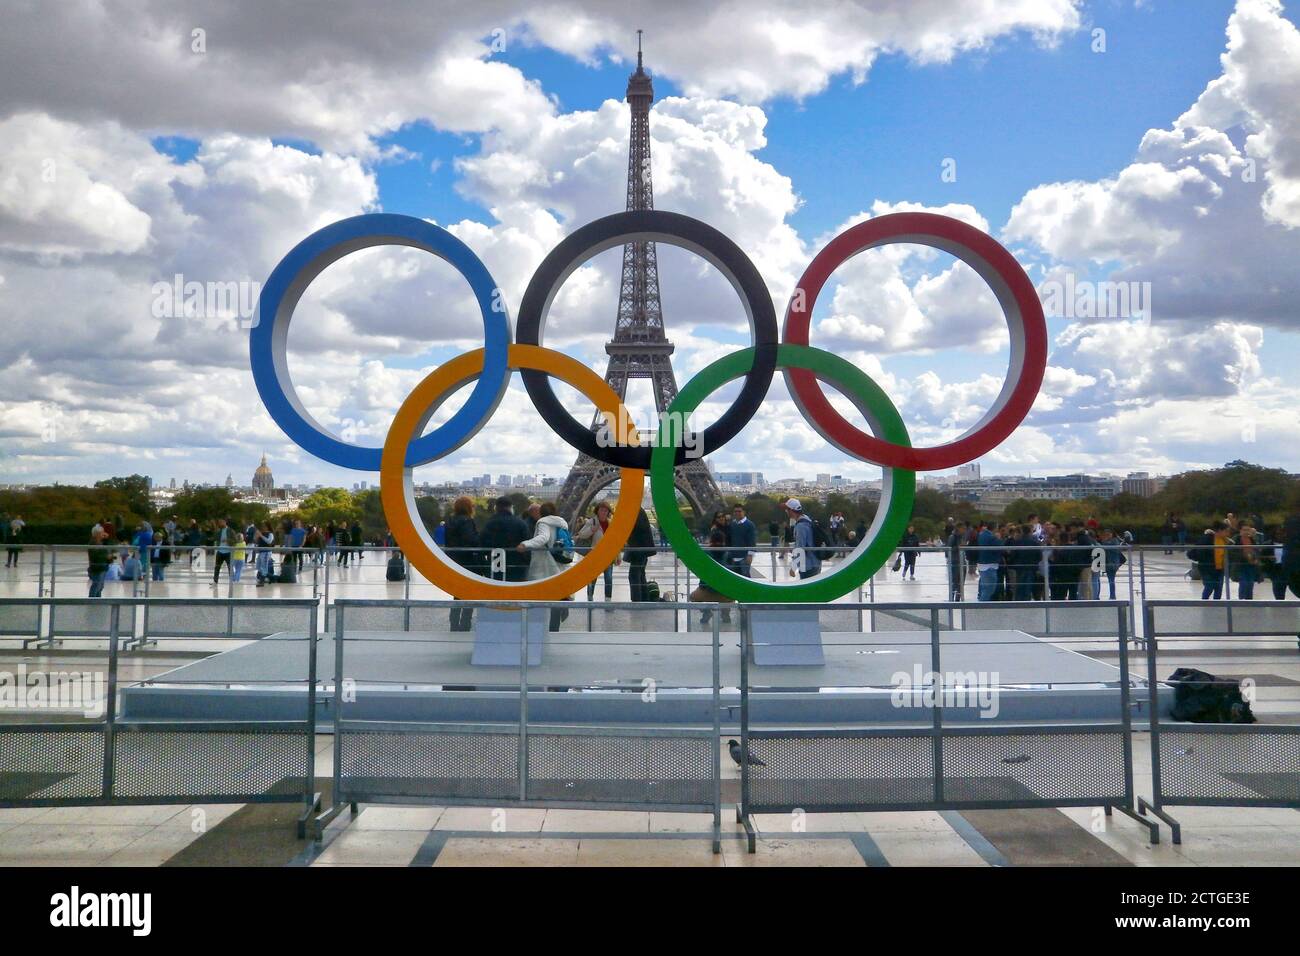 Parigi, Francia - Settembre 15 2017: Anelli olimpici installati sulla spianata del Trocadero per commemorare i Giochi Olimpici che si terranno a Par Foto Stock